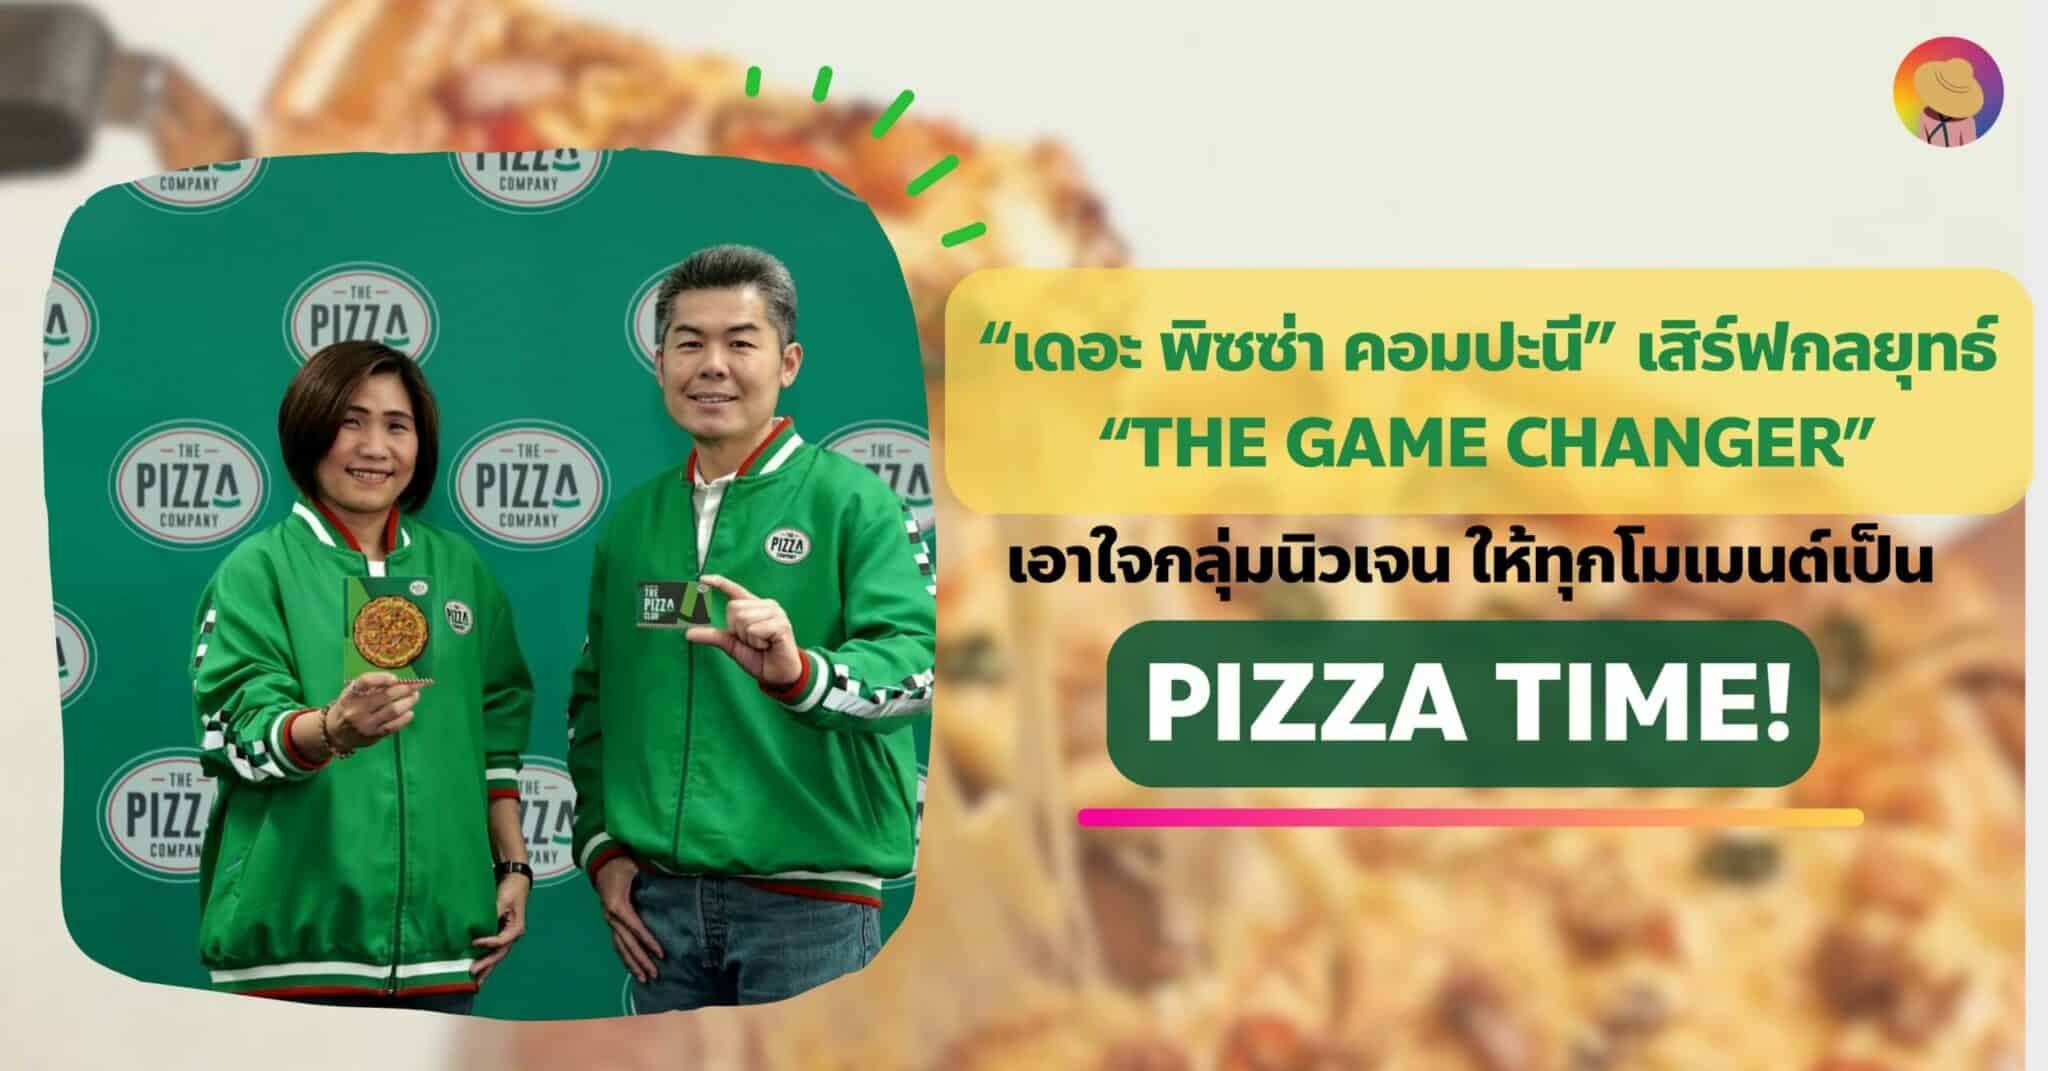 “เดอะ พิซซ่า คอมปะนี” เสิร์ฟกลุ่มนิวเจน ให้ทุกโมเมนต์เป็น Pizza Time!